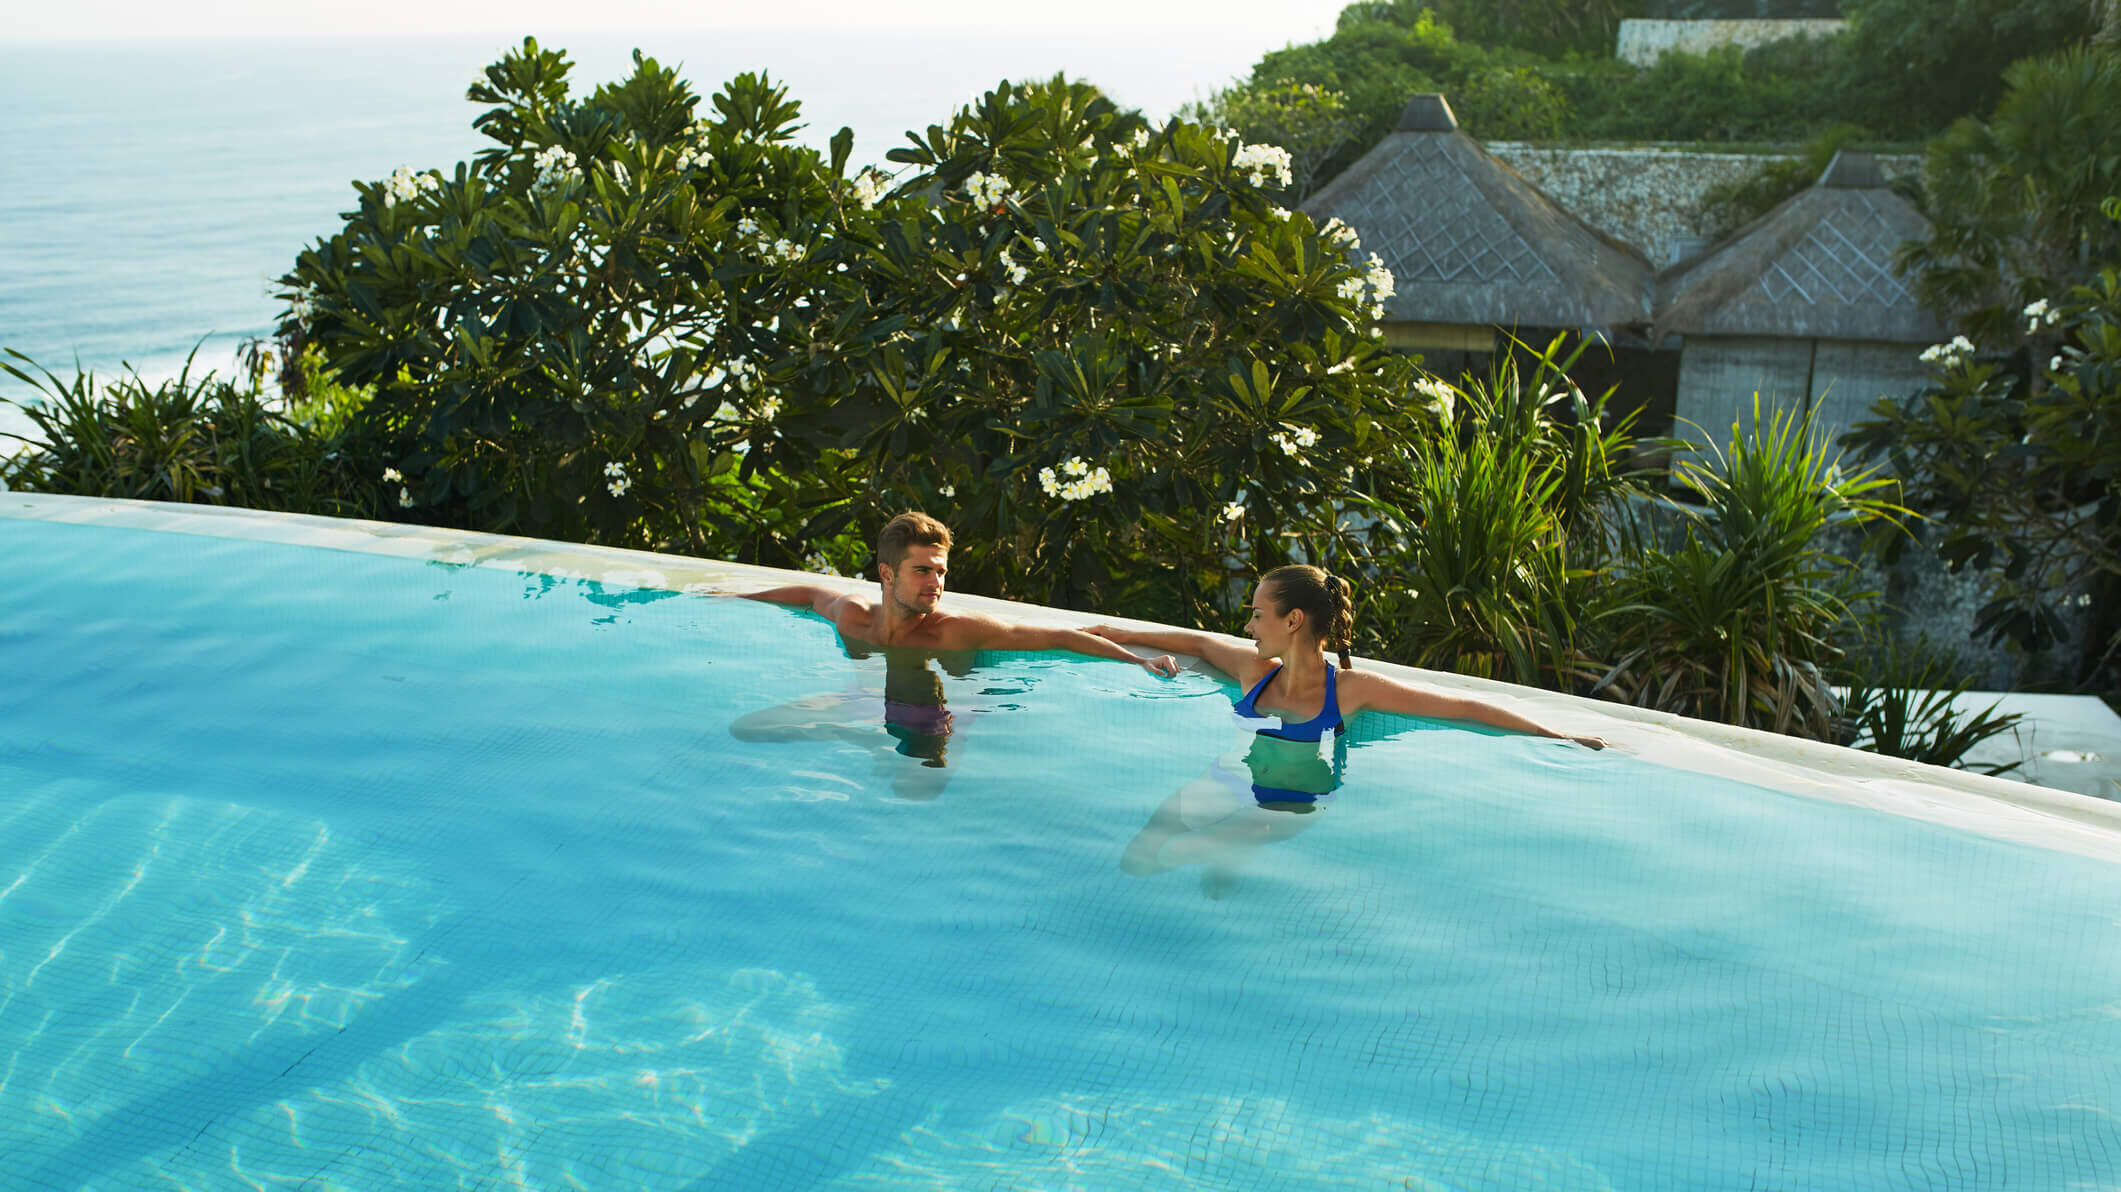 Fiji Infinity pool resort couple